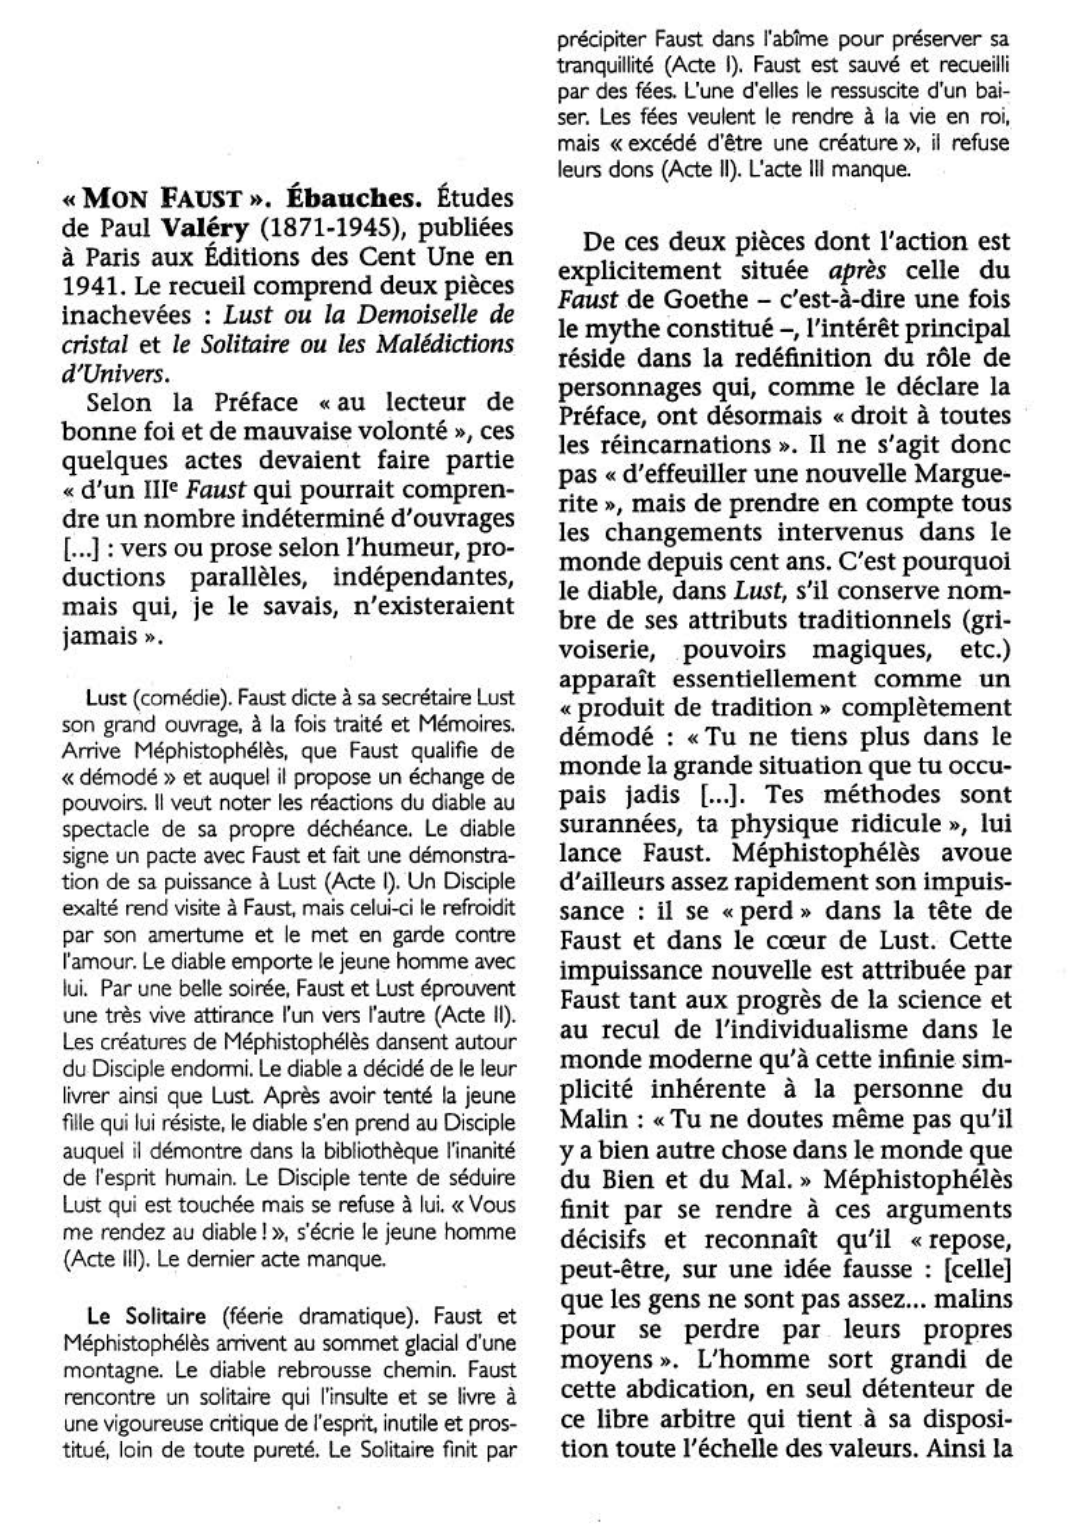 Prévisualisation du document Mon Faust (Ébauches) [1941] Valéry (résumé)